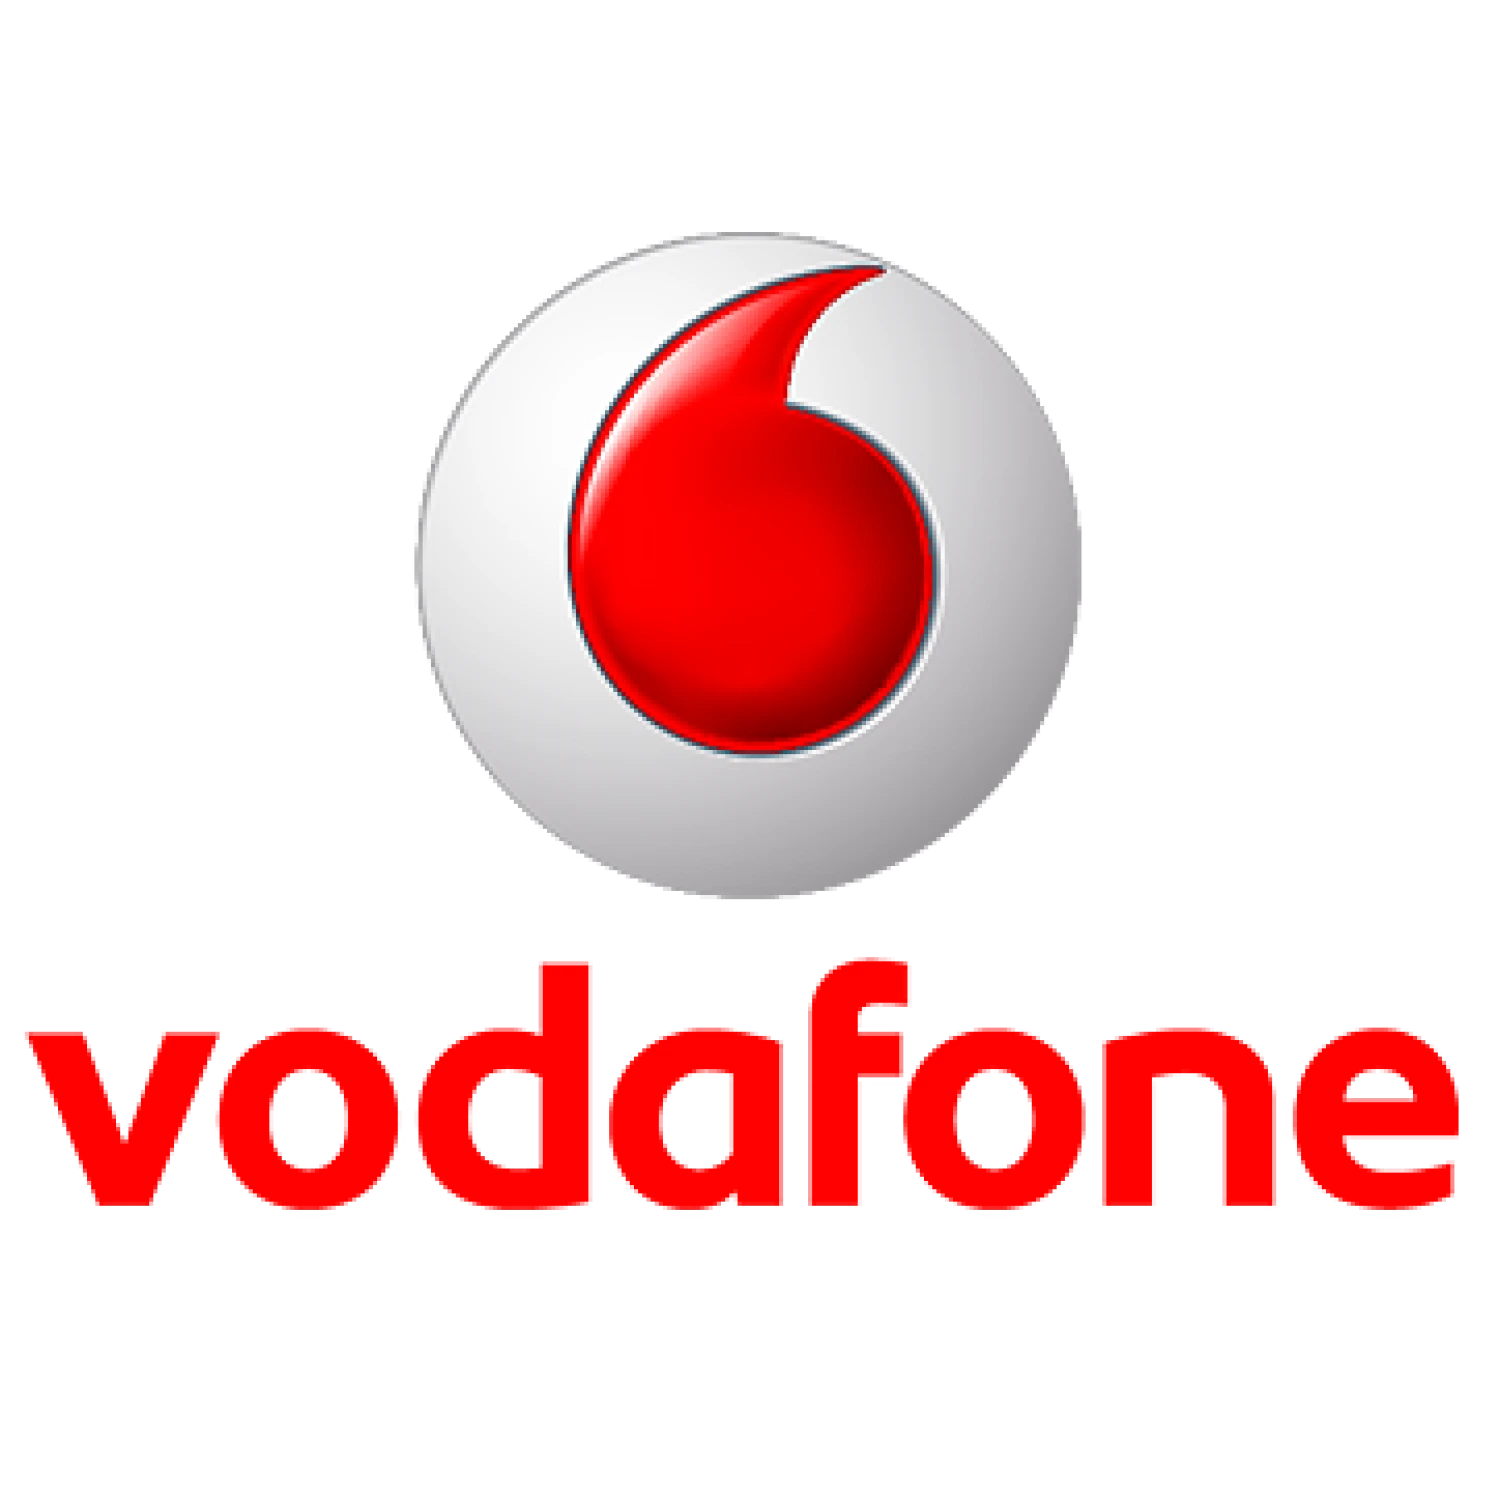 Vodafonu se snížil zisk o čtvrtinu. Mohou za to investice do 5G sítě